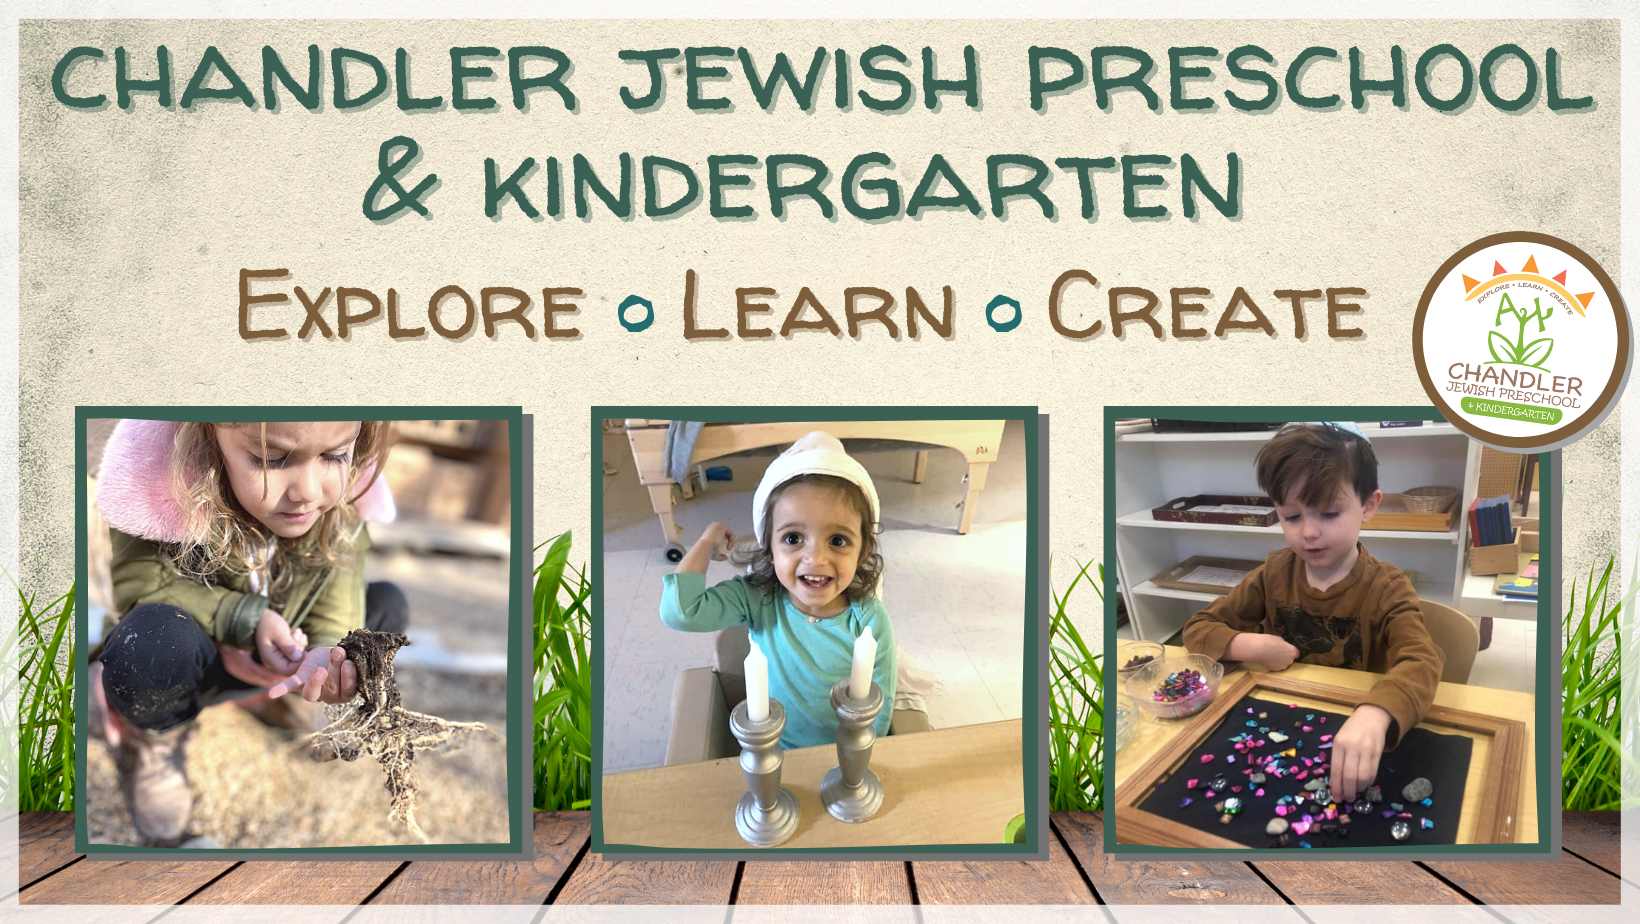 Chandler Jewish Preschool & Kindergarten